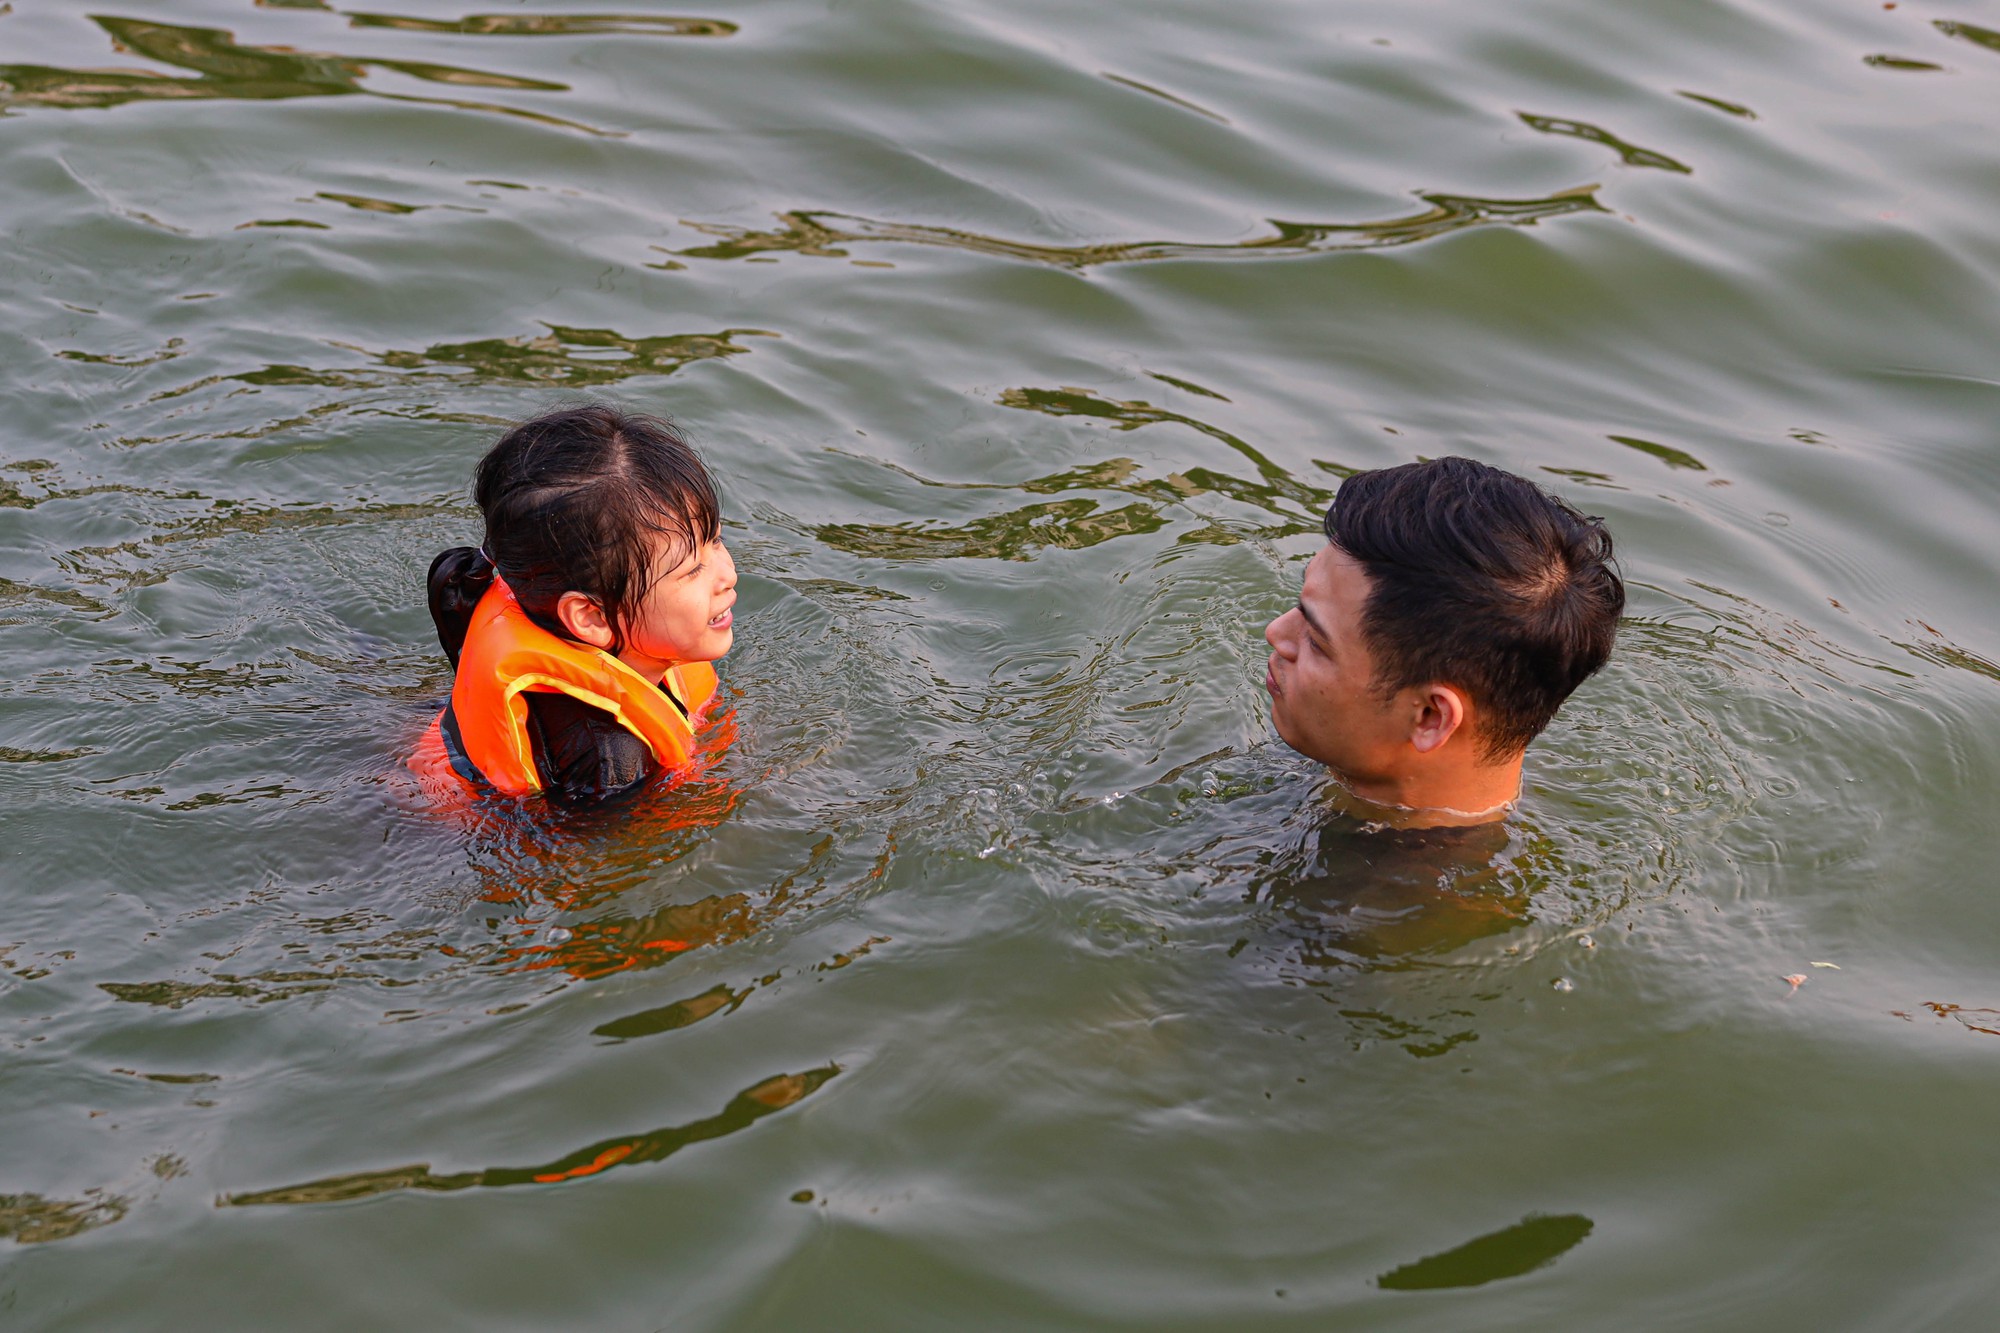 Hà Nội: Ao làng trở thành bể bơi, người dân thích thú ngâm mình “giải nhiệt” - Ảnh 6.